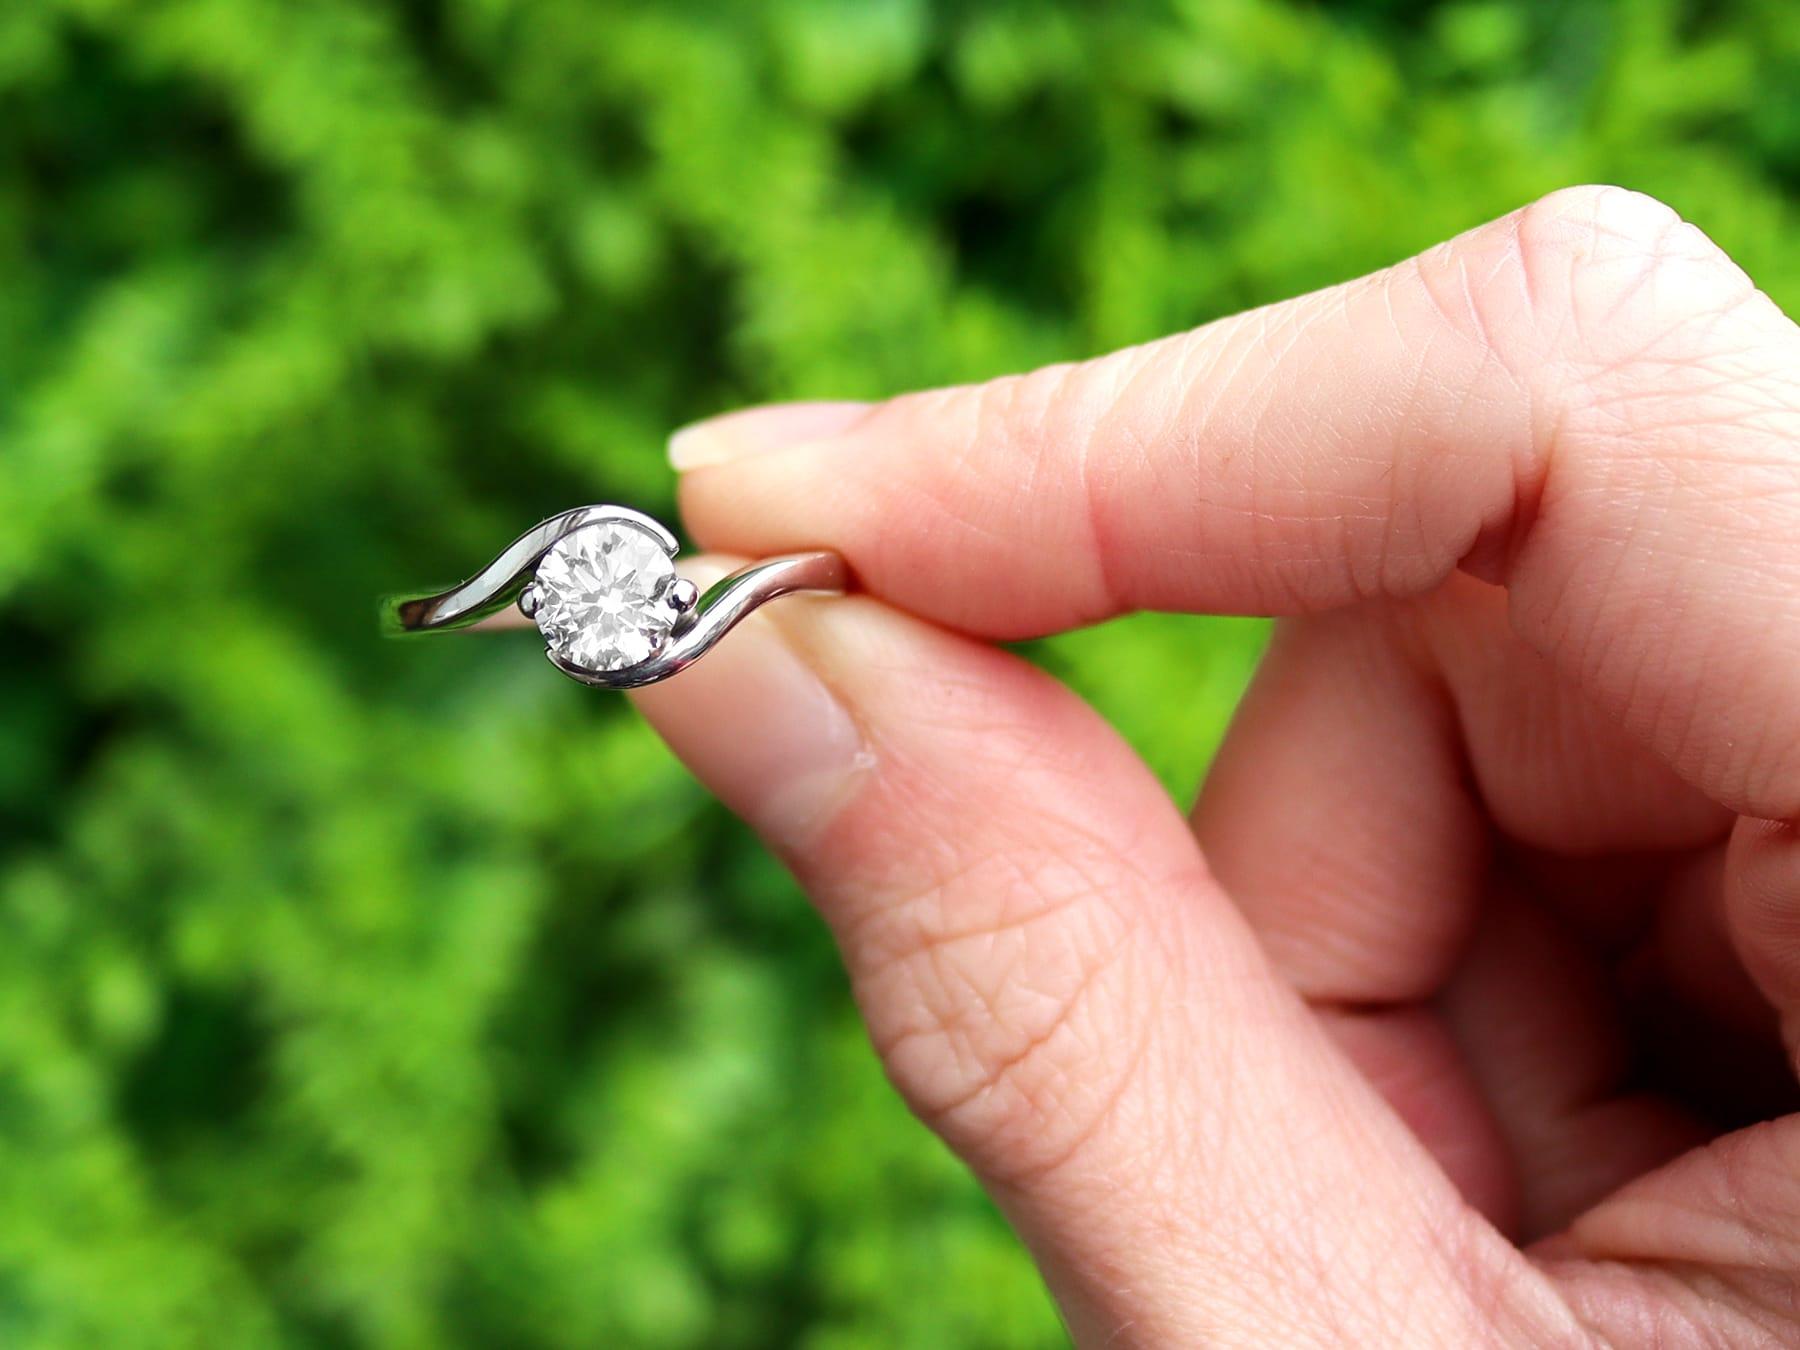 Anillo solitario de platino y diamante de talla redonda brillante moderno de 0,99 quilates; forma parte de nuestra variada gama de joyas/joyería con diamantes.

Este fino anillo solitario de diamantes contemporáneo ha sido elaborado en platino.

El